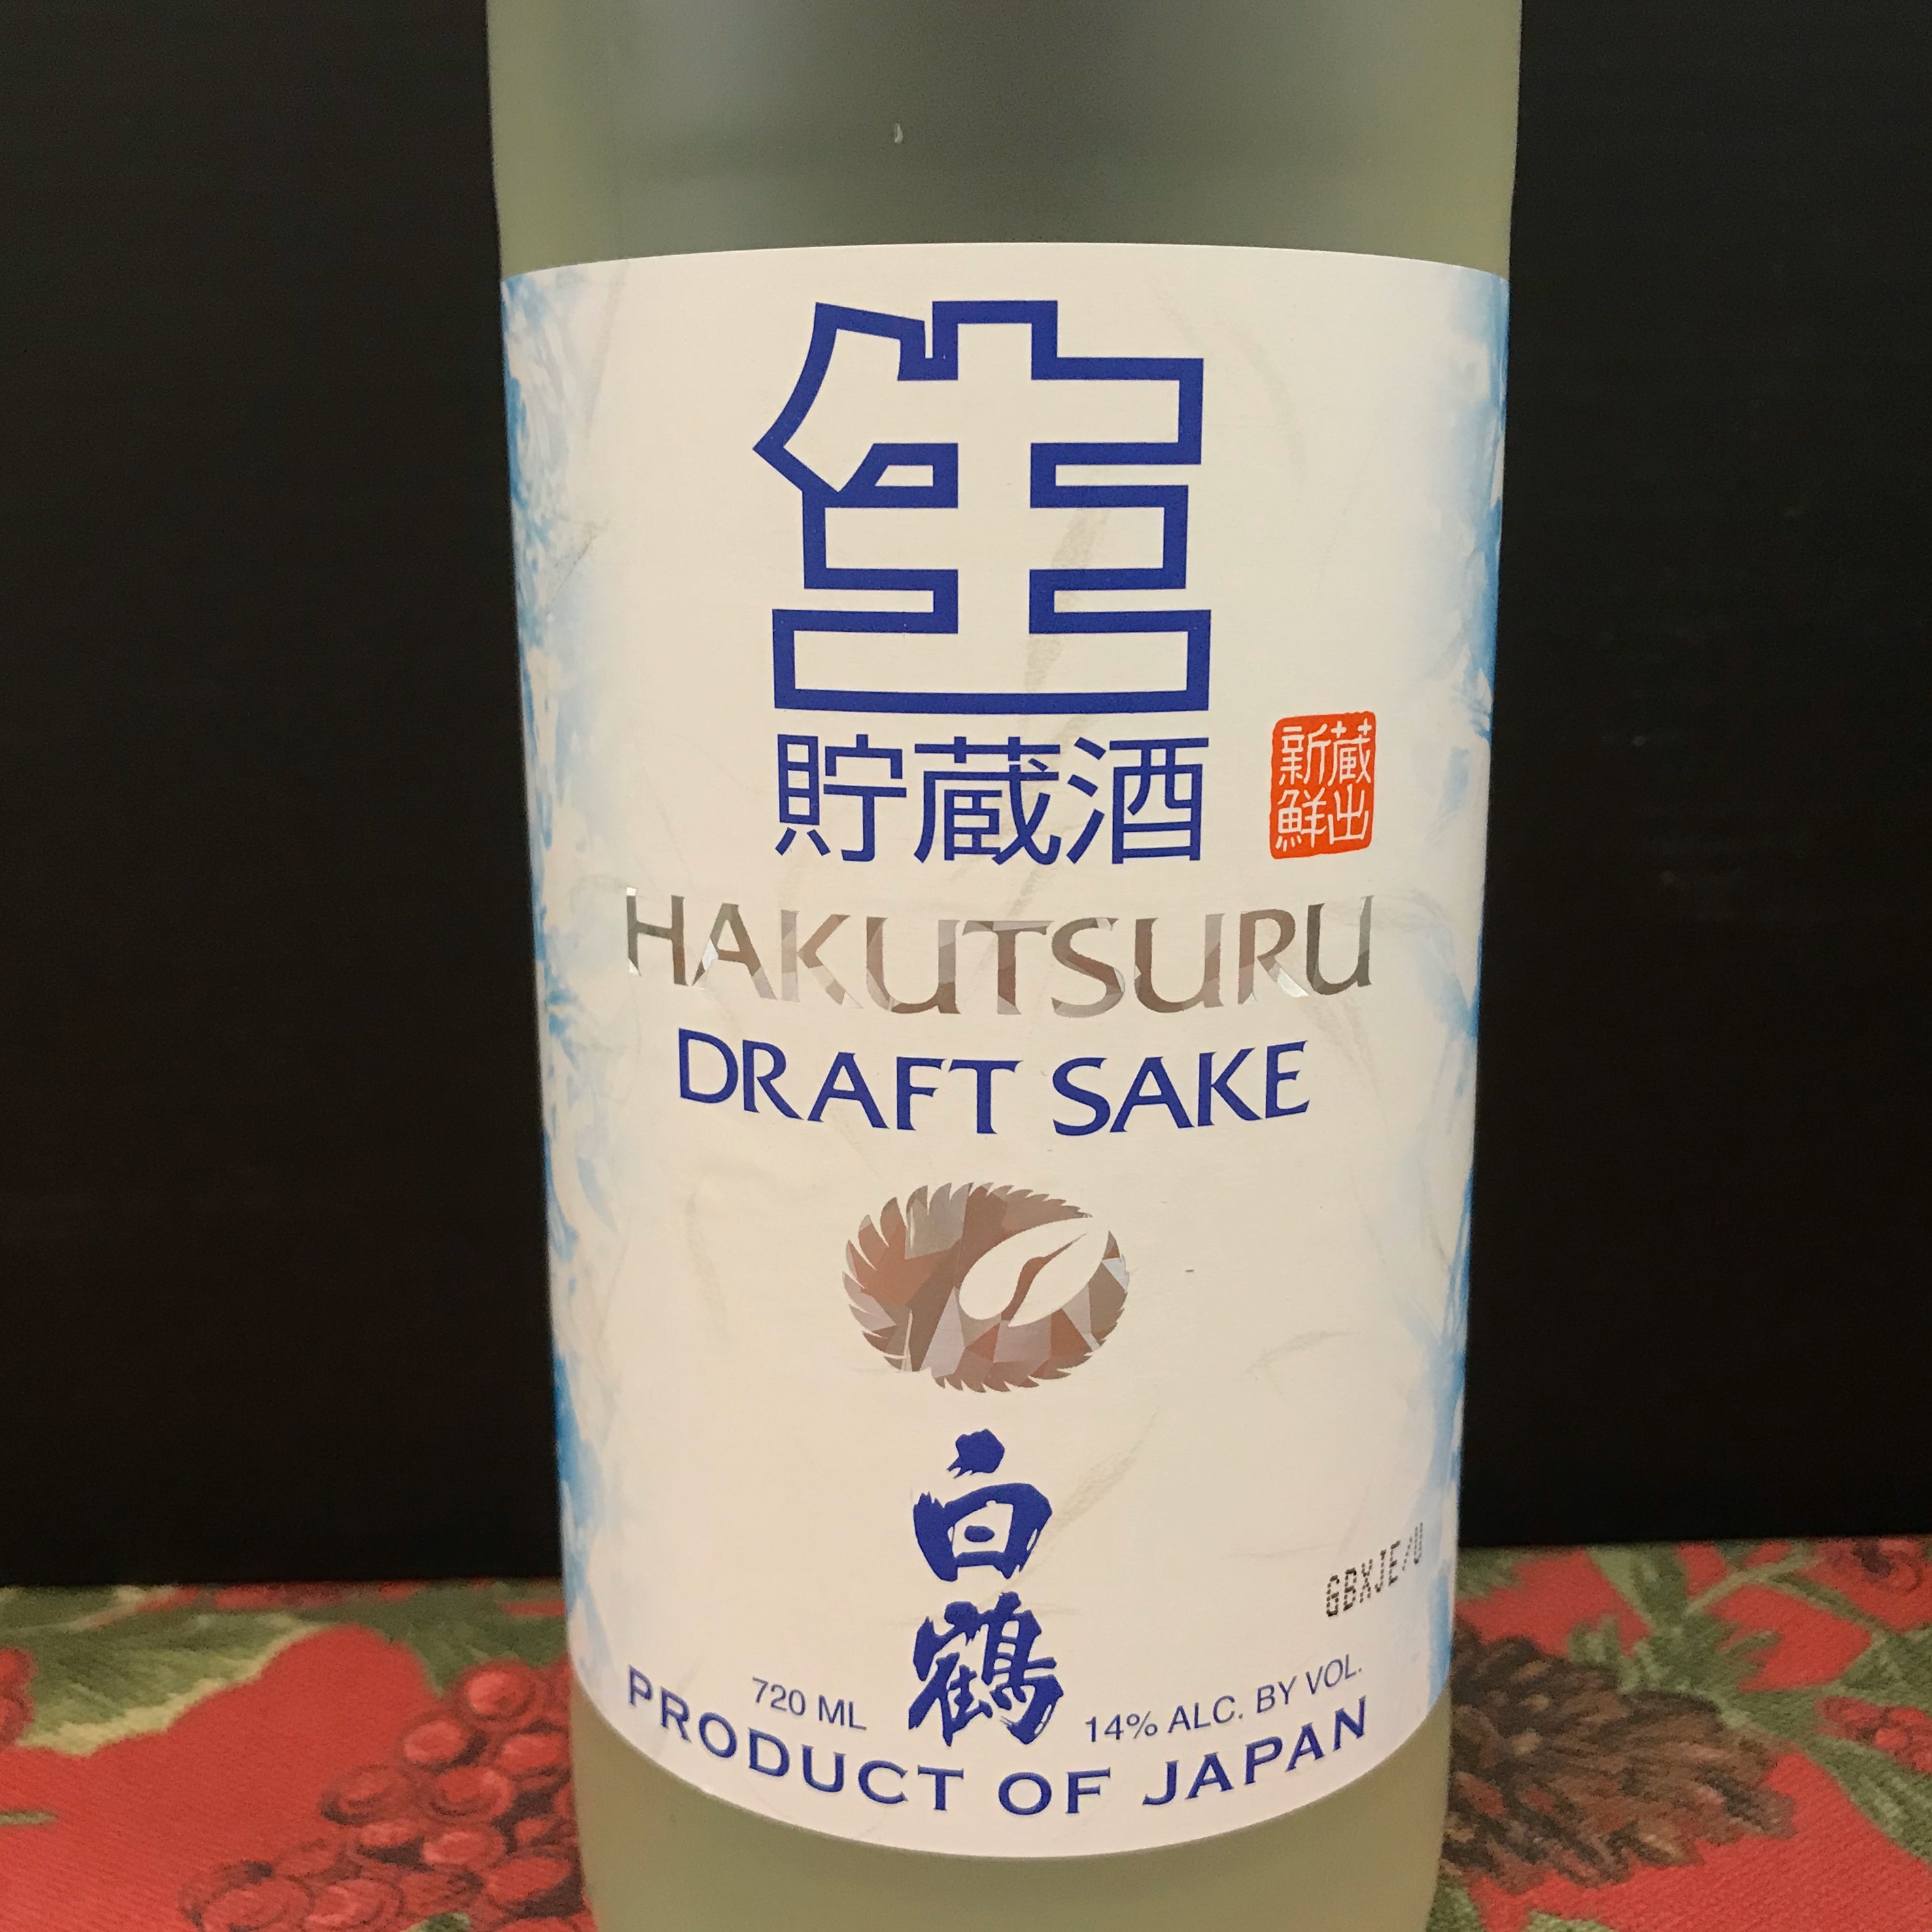 Hakutsuru Draft Sake 720 ml